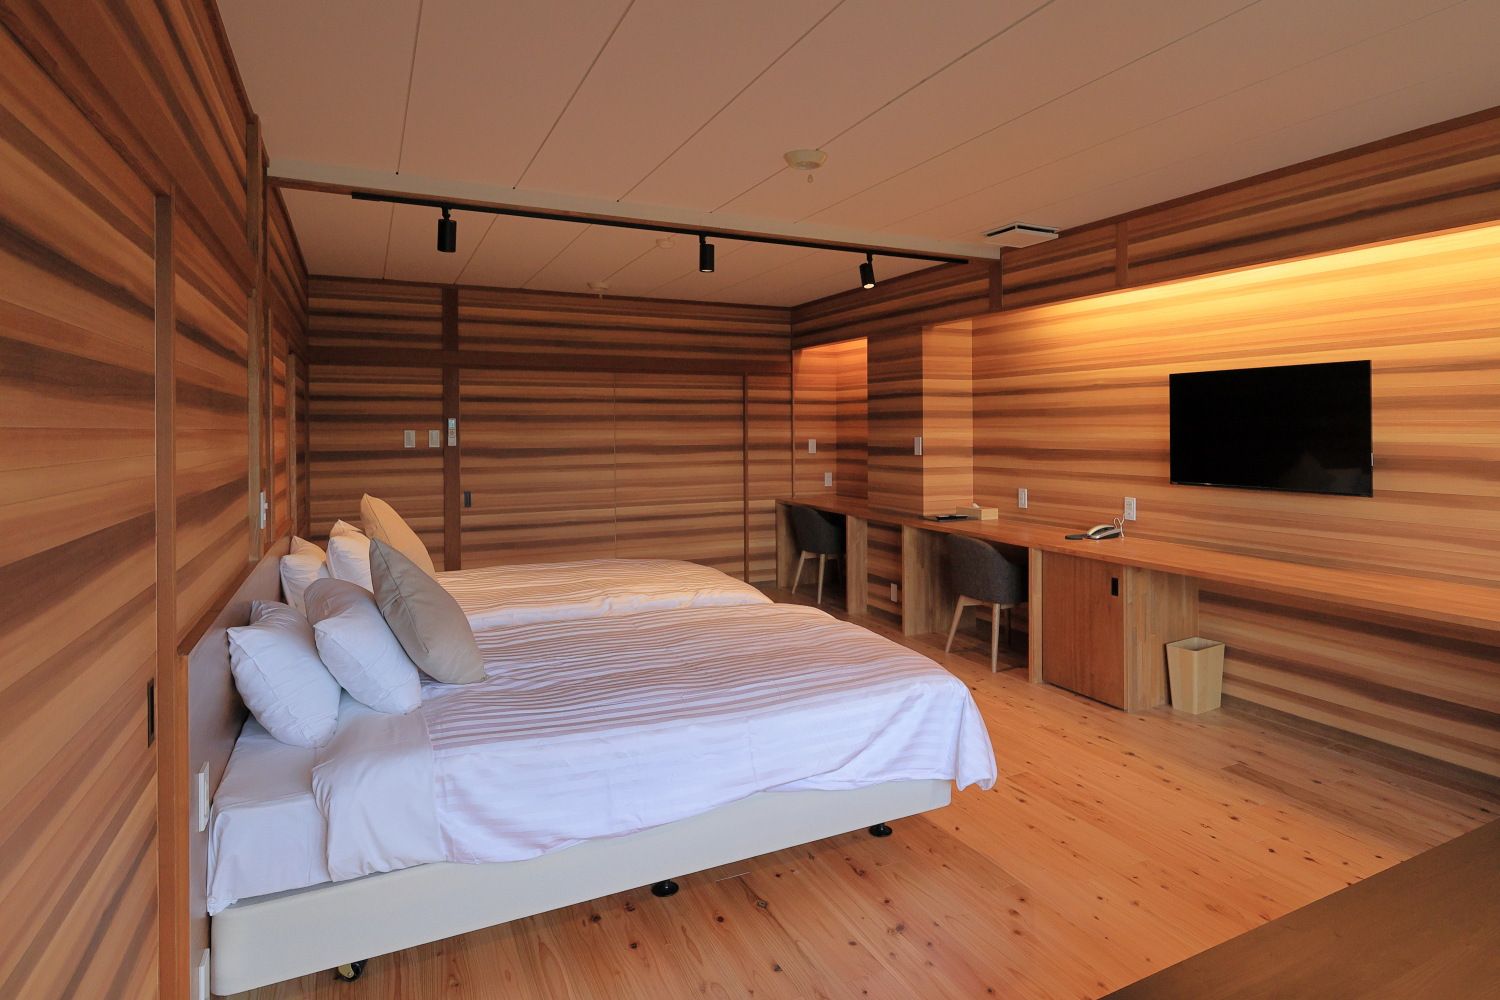 Wood Room/ウッドルーム：自然豊かな雰囲気を取り入れ、木のぬくもりを感じられるお部屋です。